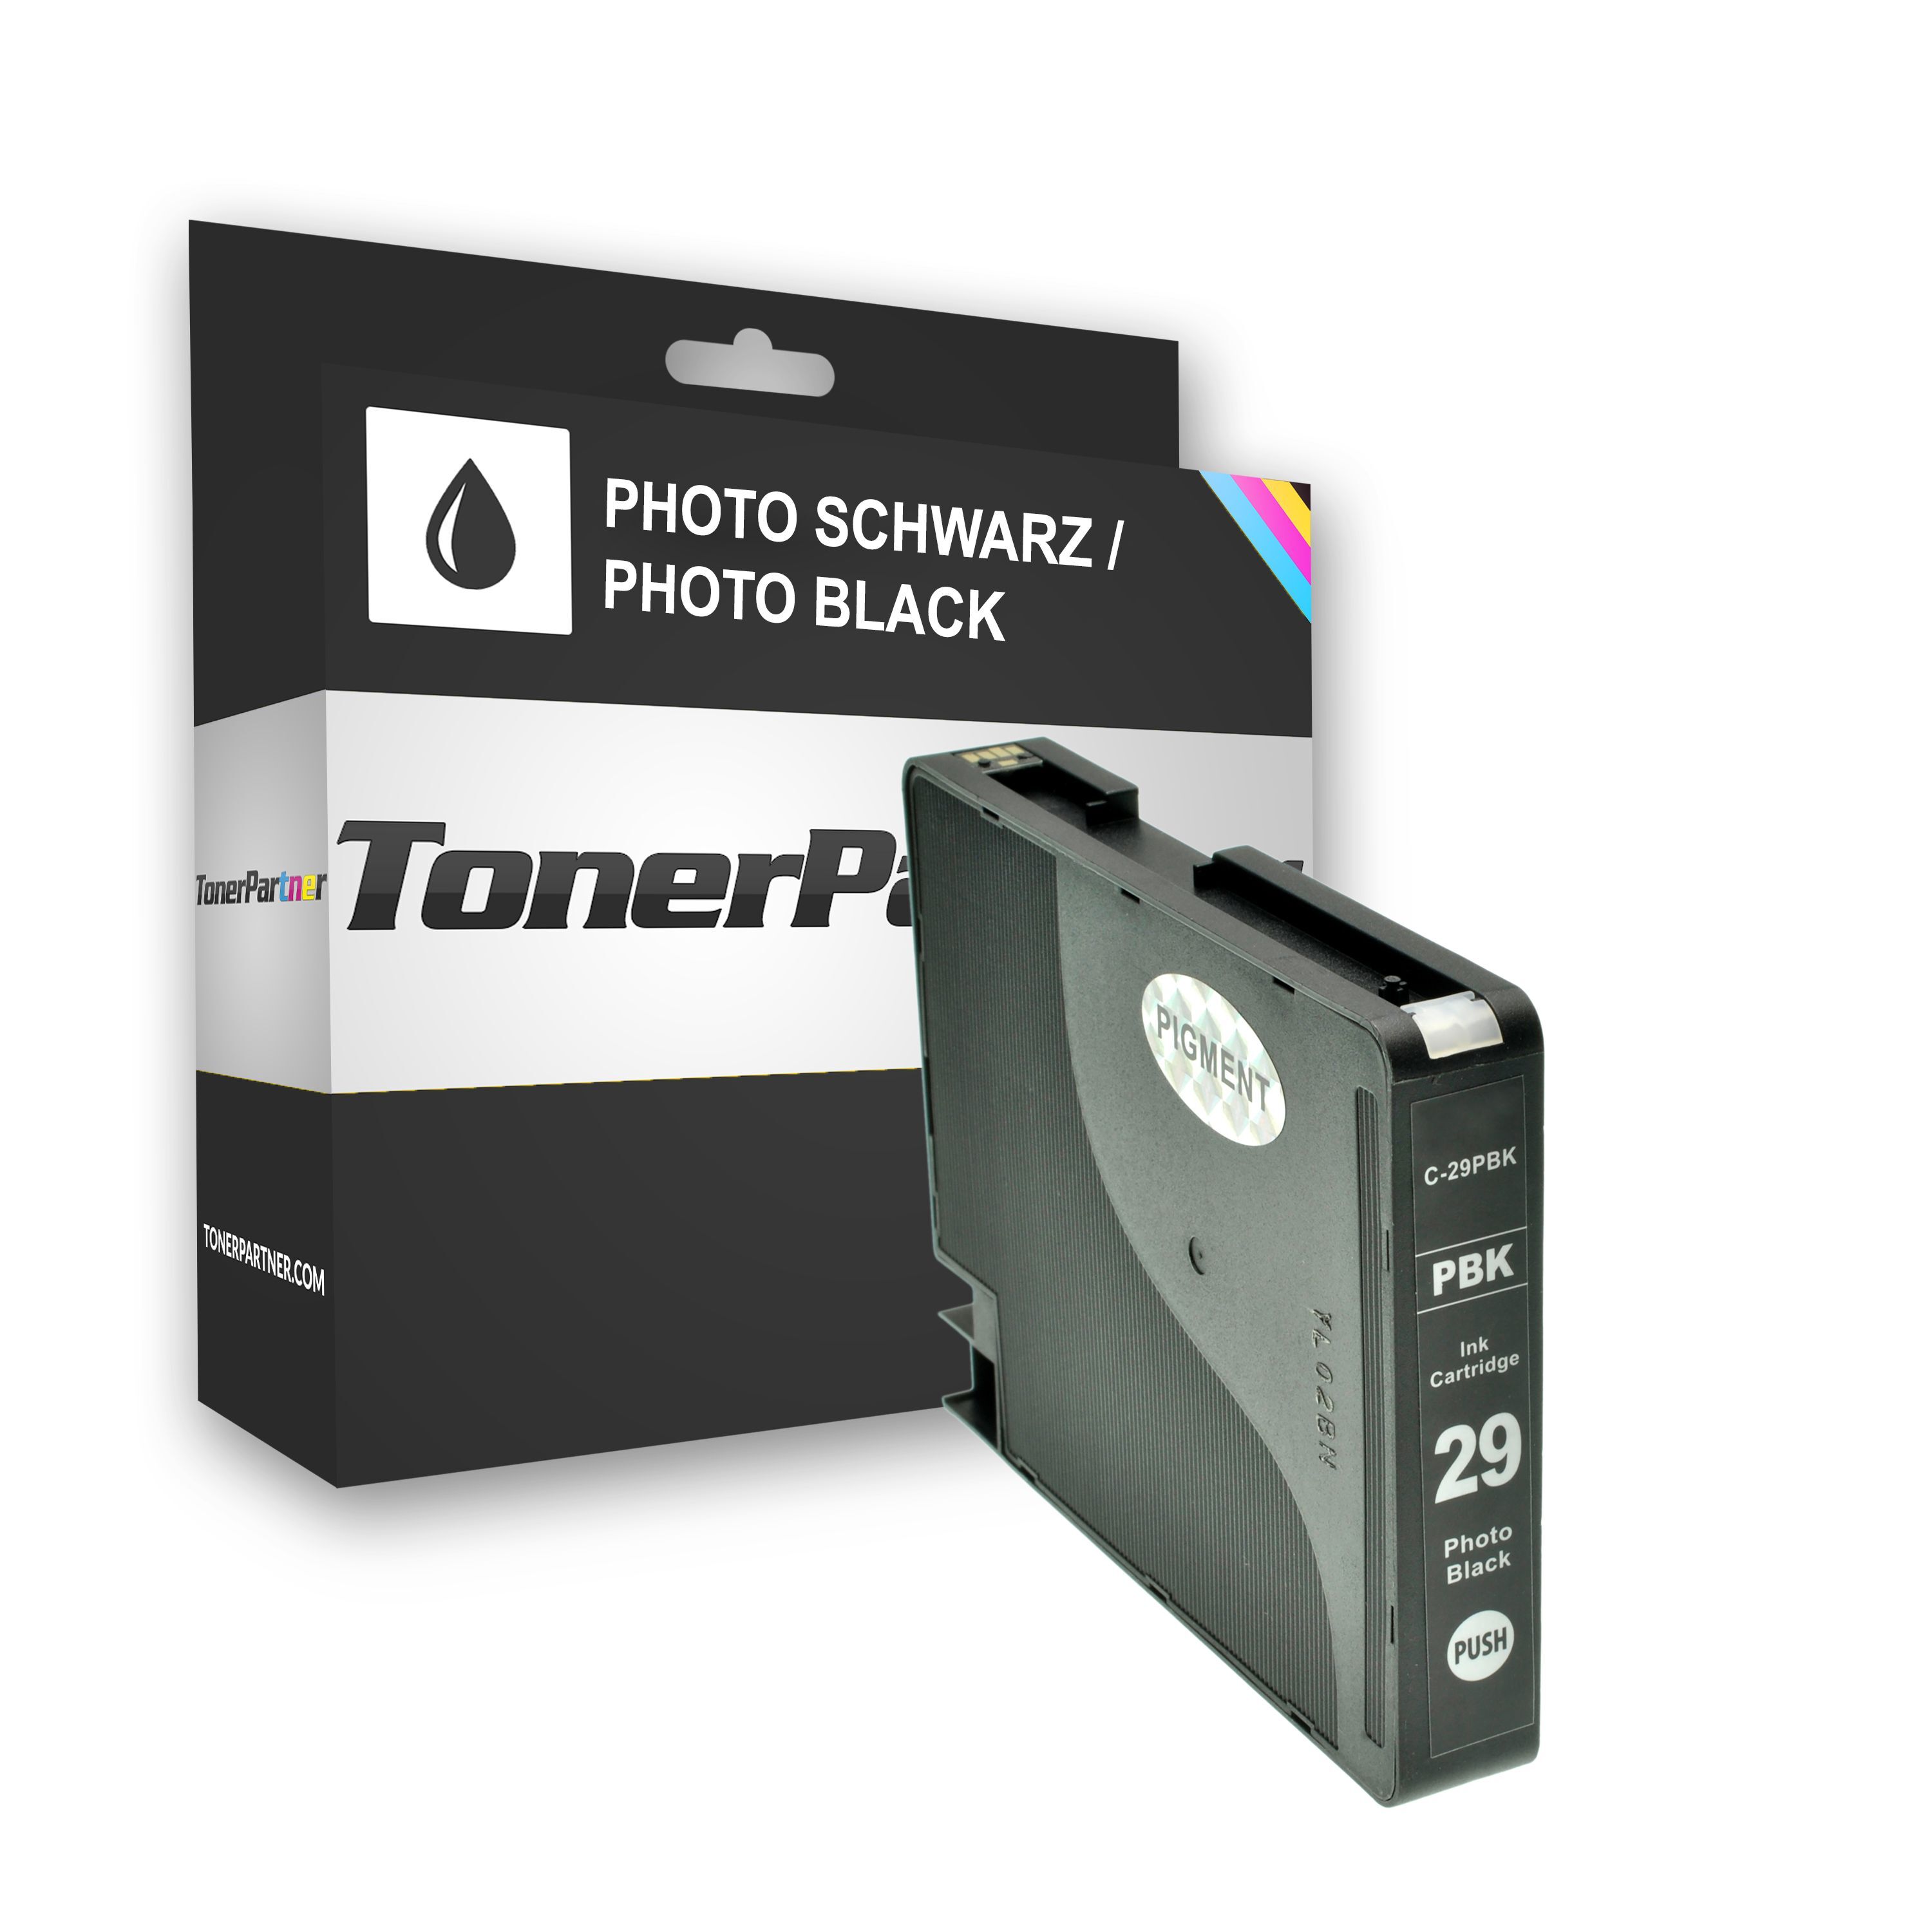 TonerPartner Compatible avec Canon Pixma Pro 1 cartouche d'encre (PGI-29 PBK / 4869 B 001) photonoir, 1 300 pages, 1,08 centimes par page de TonerPartner